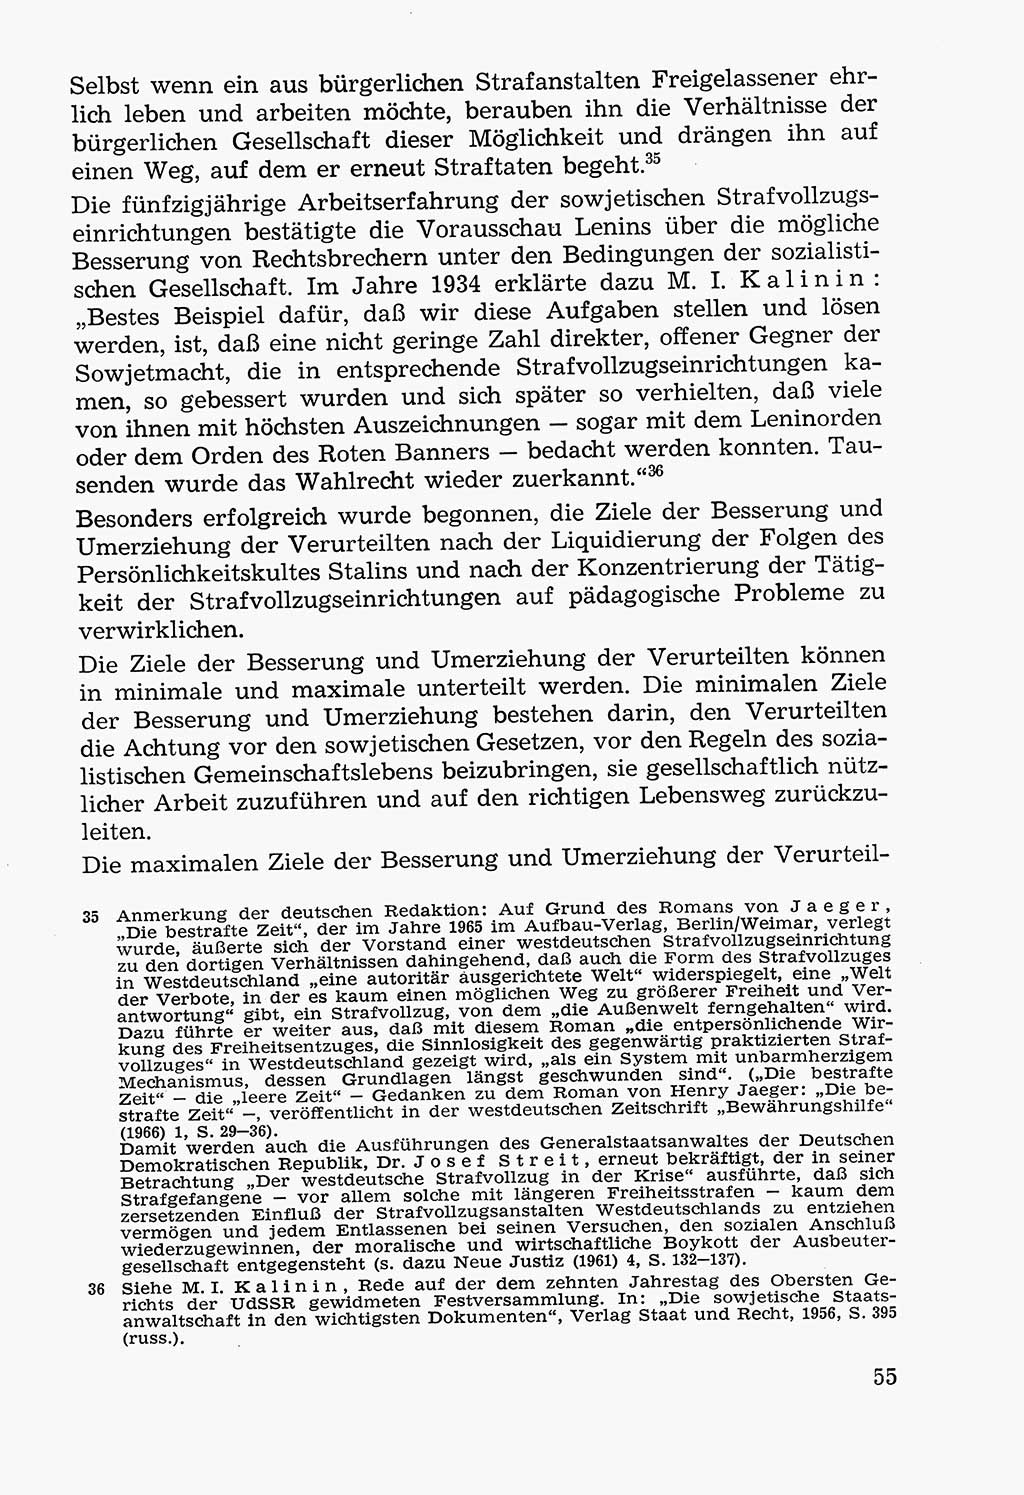 Lehrbuch der Strafvollzugspädagogik [Deutsche Demokratische Republik (DDR)] 1969, Seite 55 (Lb. SV-Pd. DDR 1969, S. 55)